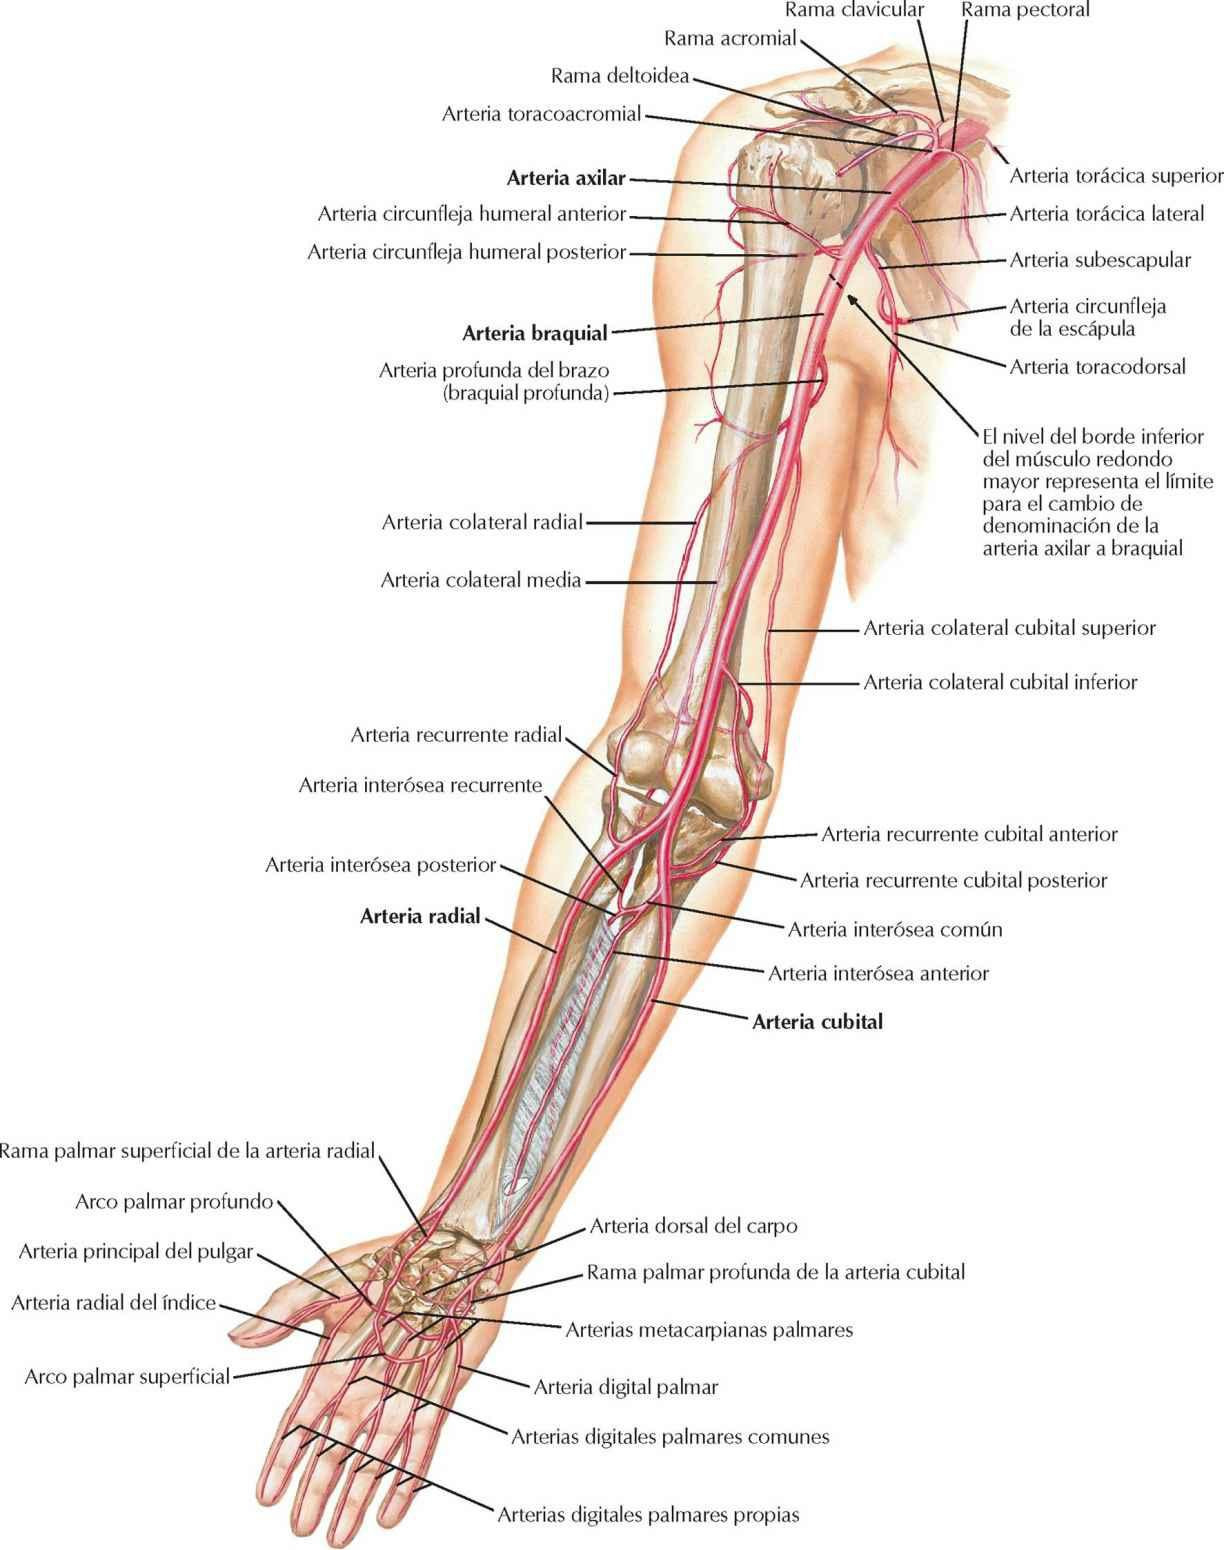 Arterias del brazo, antebrazo y mano